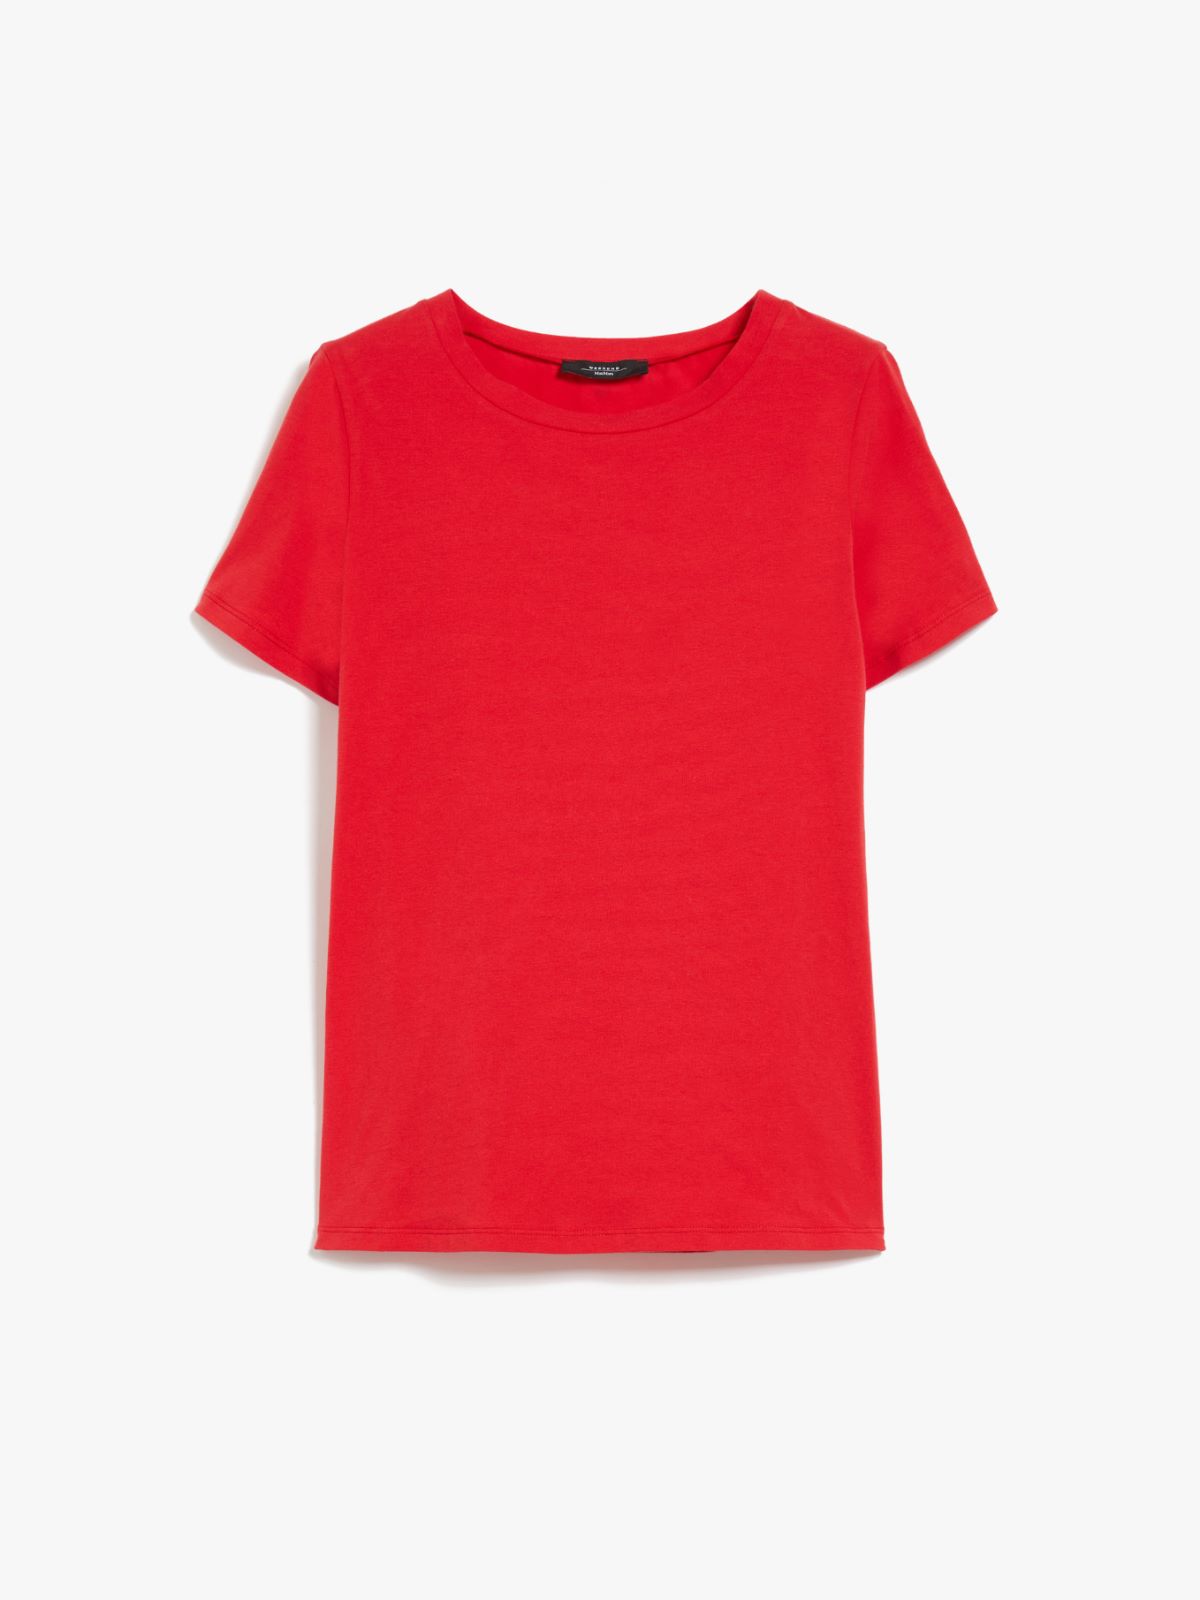 Jersey T-shirt - RED - Weekend Max Mara - 6